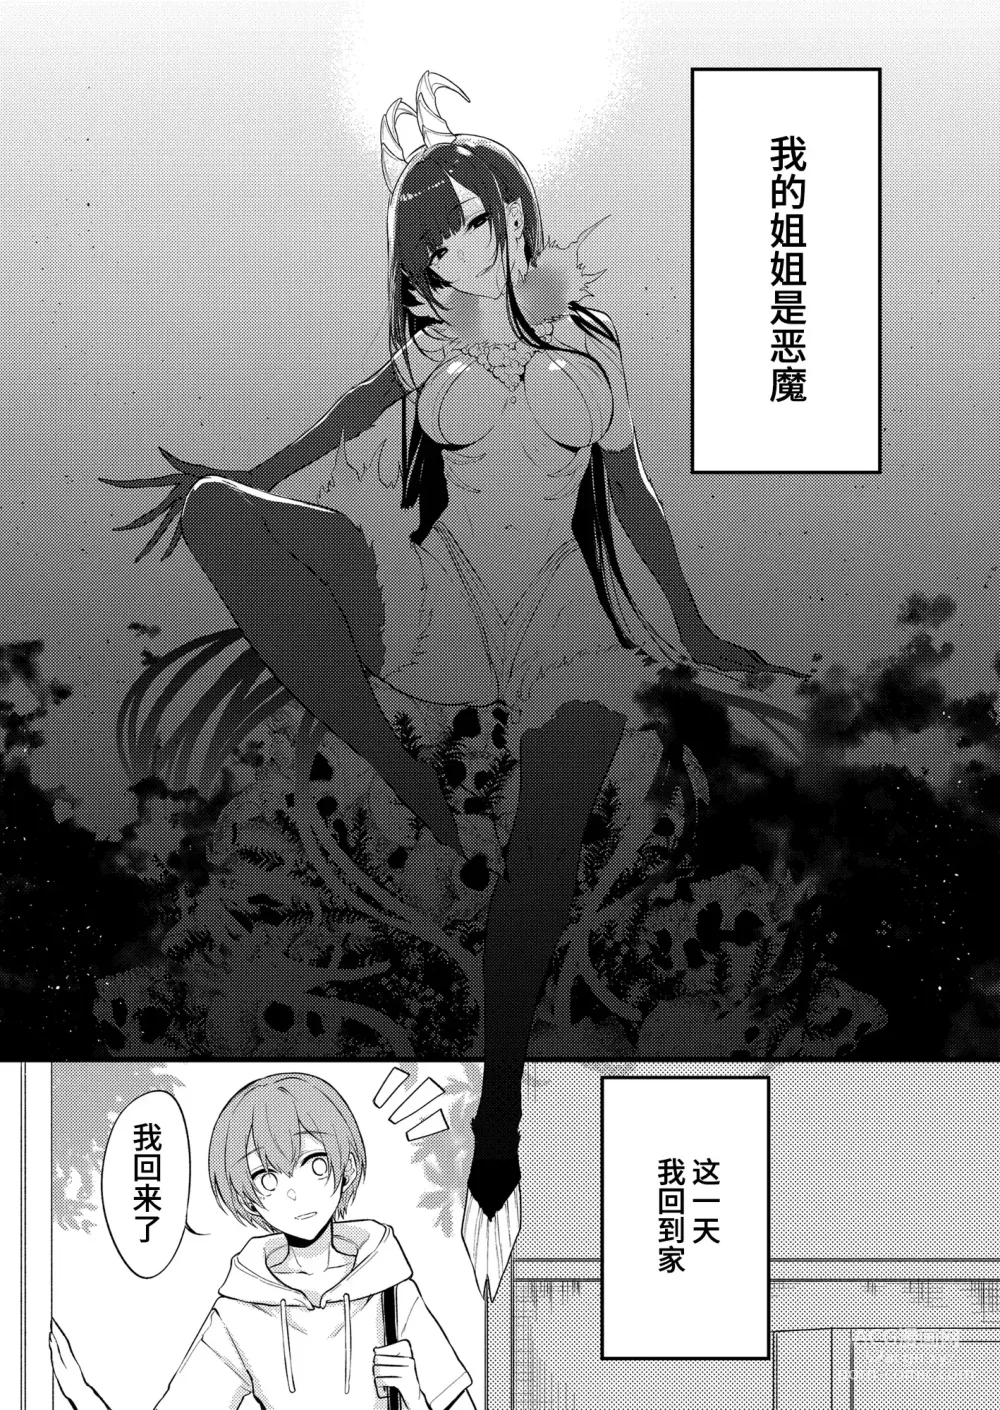 Page 429 of doujinshi Ane Naru Mono 1-11